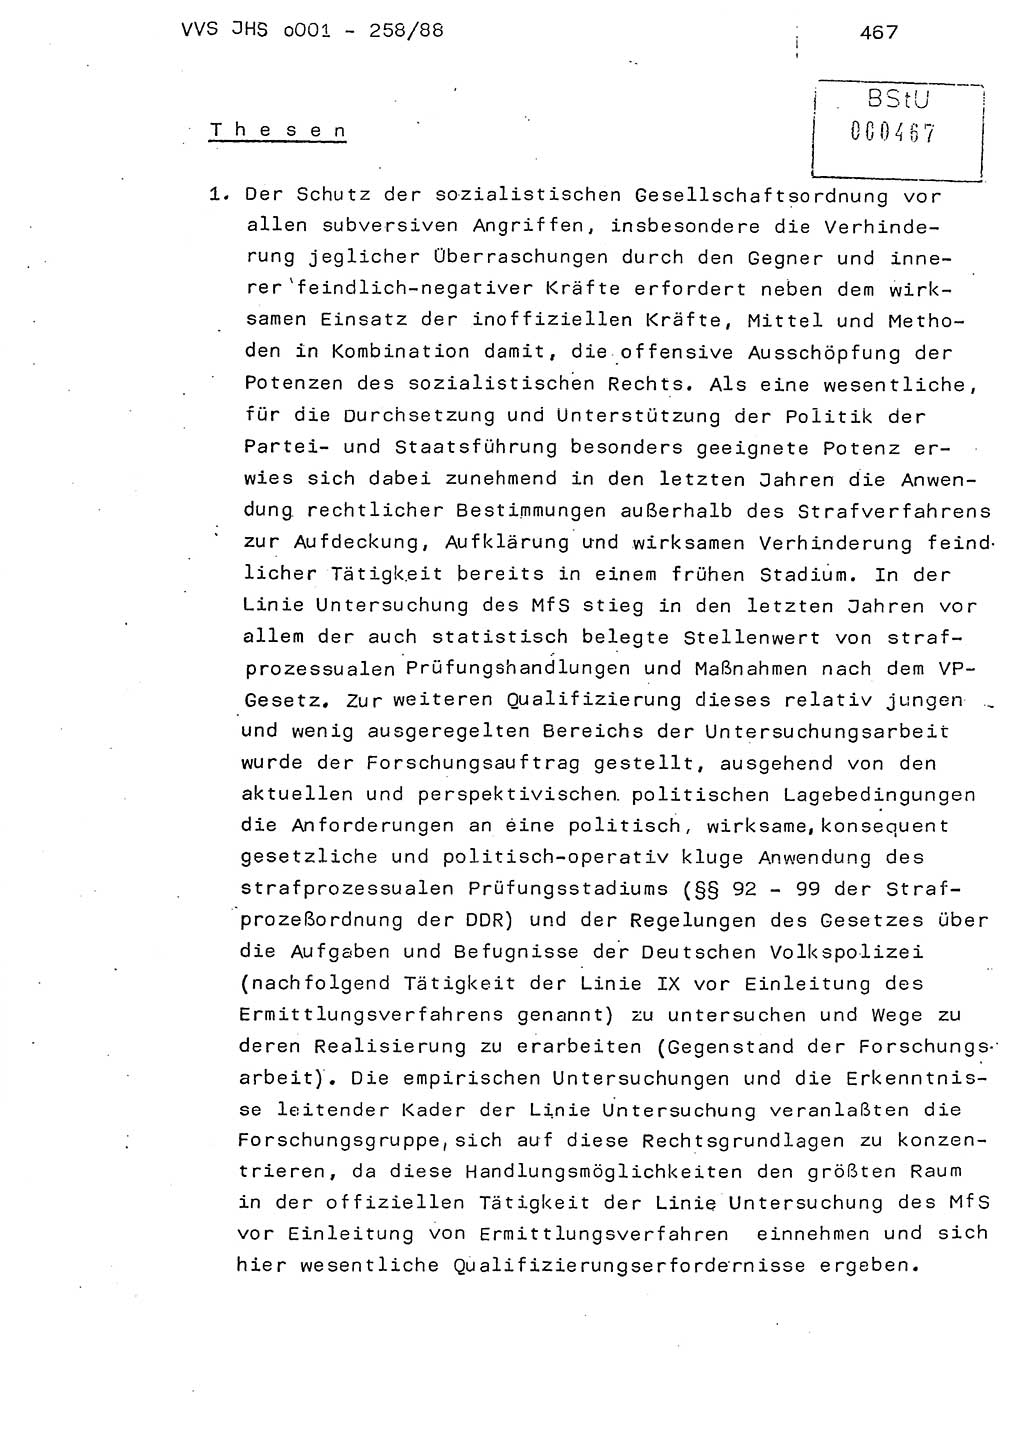 Dissertation, Oberleutnant Uwe Kärsten (JHS), Hauptmann Dr. Joachim Henkel (JHS), Oberstleutnant Werner Mählitz (Leiter der Abt. Ⅸ BV Rostock), Oberstleutnant Jürgen Tröge (HA Ⅸ/AKG), Oberstleutnant Winfried Ziegler (HA Ⅸ/9), Major Wolf-Rüdiger Wurzler (JHS), Ministerium für Staatssicherheit (MfS) [Deutsche Demokratische Republik (DDR)], Juristische Hochschule (JHS), Vertrauliche Verschlußsache (VVS) o001-258/88, Potsdam 1988, Seite 467 (Diss. MfS DDR JHS VVS o001-258/88 1988, S. 467)